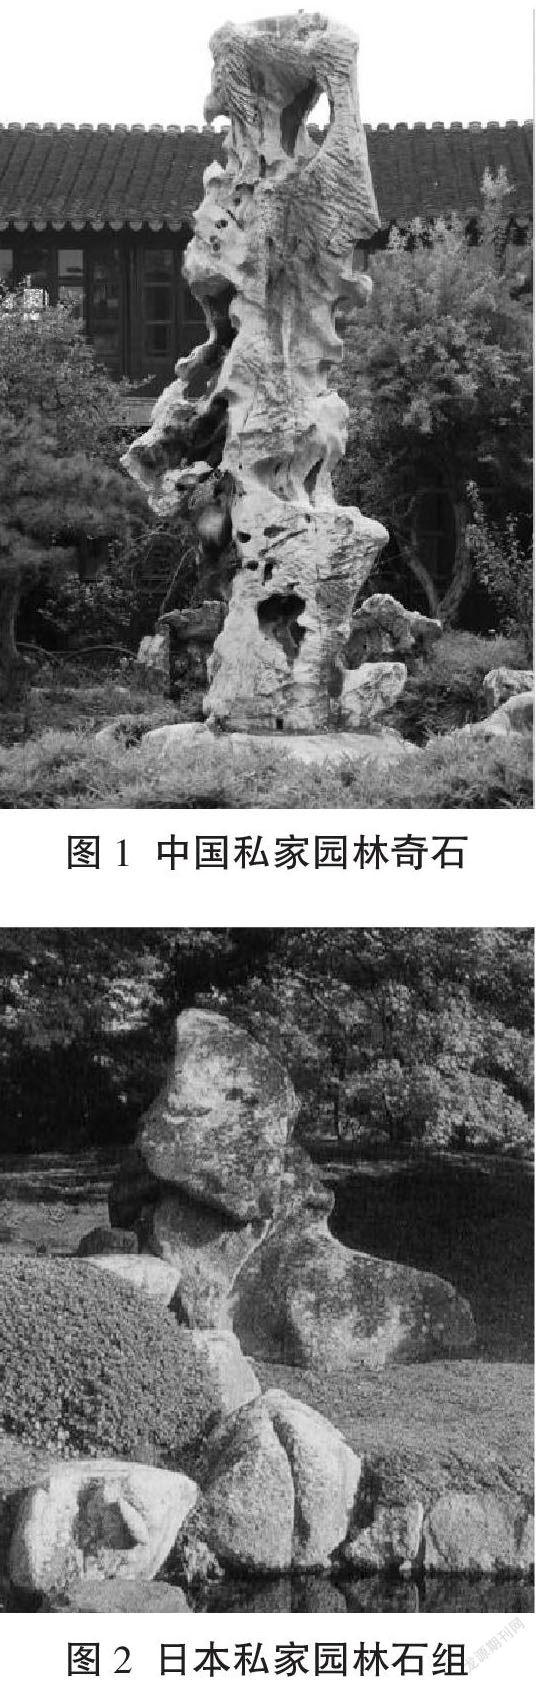 明清时期中日韩私家园林置石造景比较研究 参考网